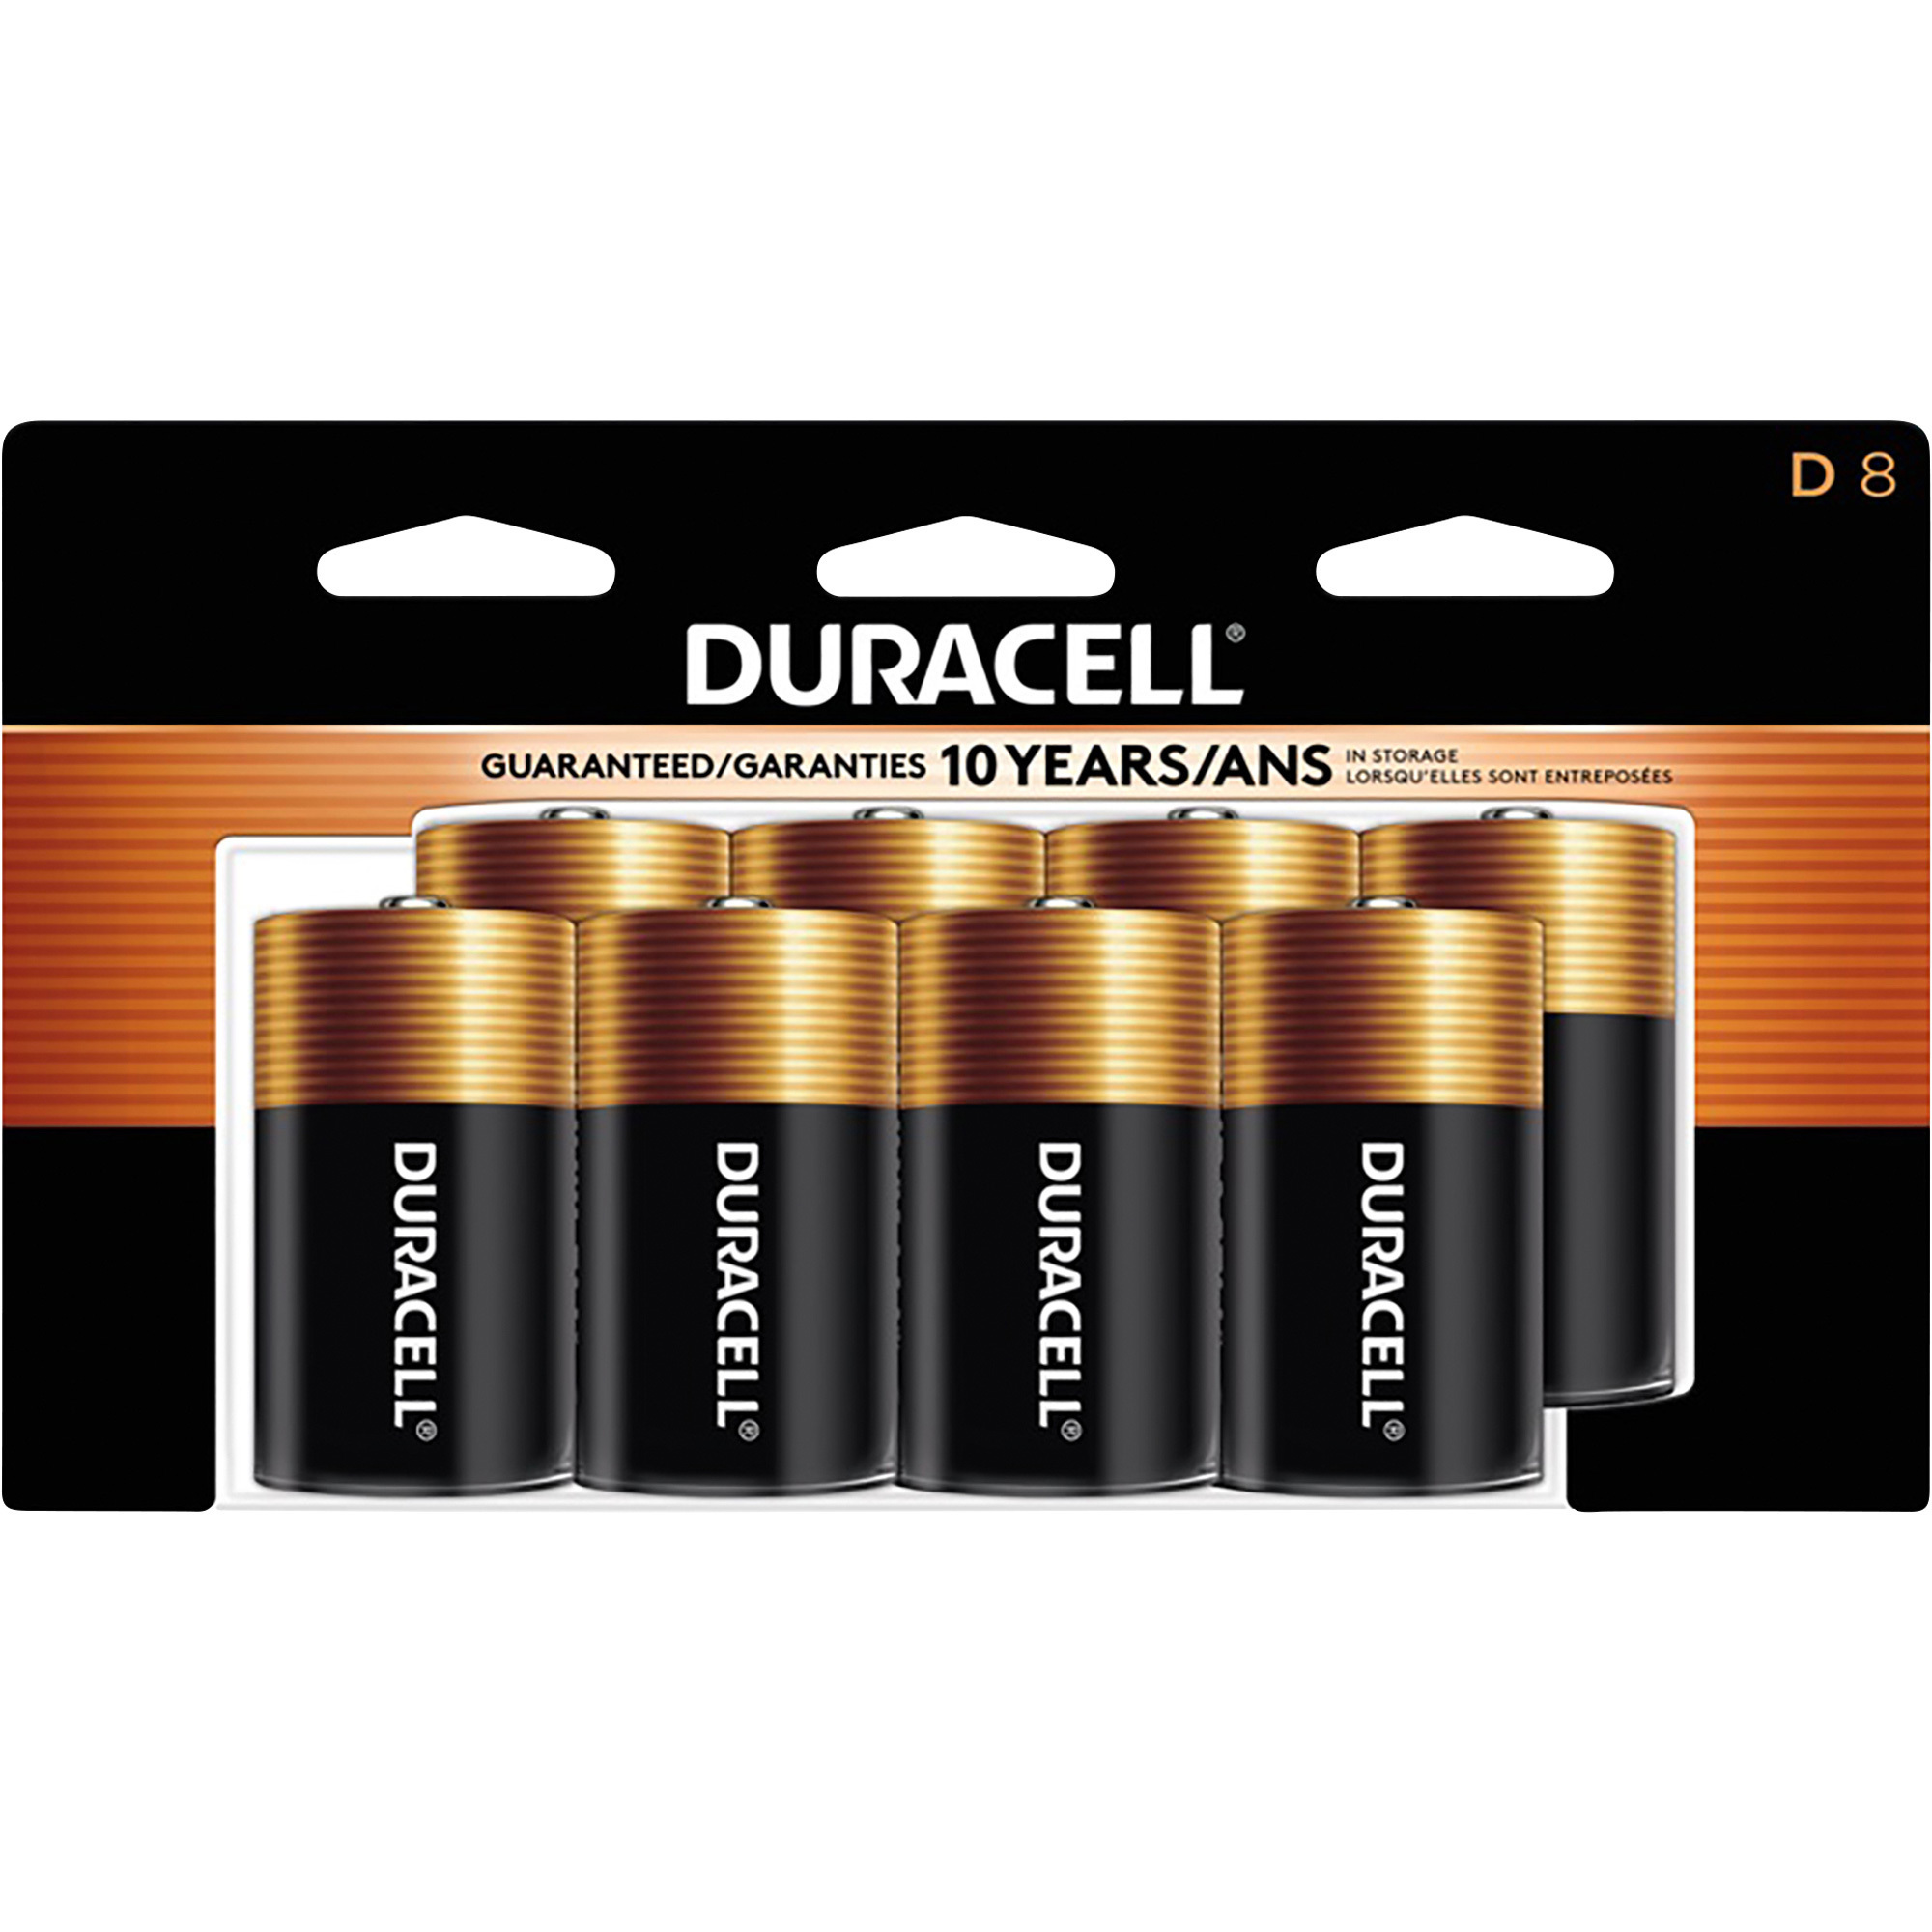 Duracell Coppertop D Batteries â 8-Pack